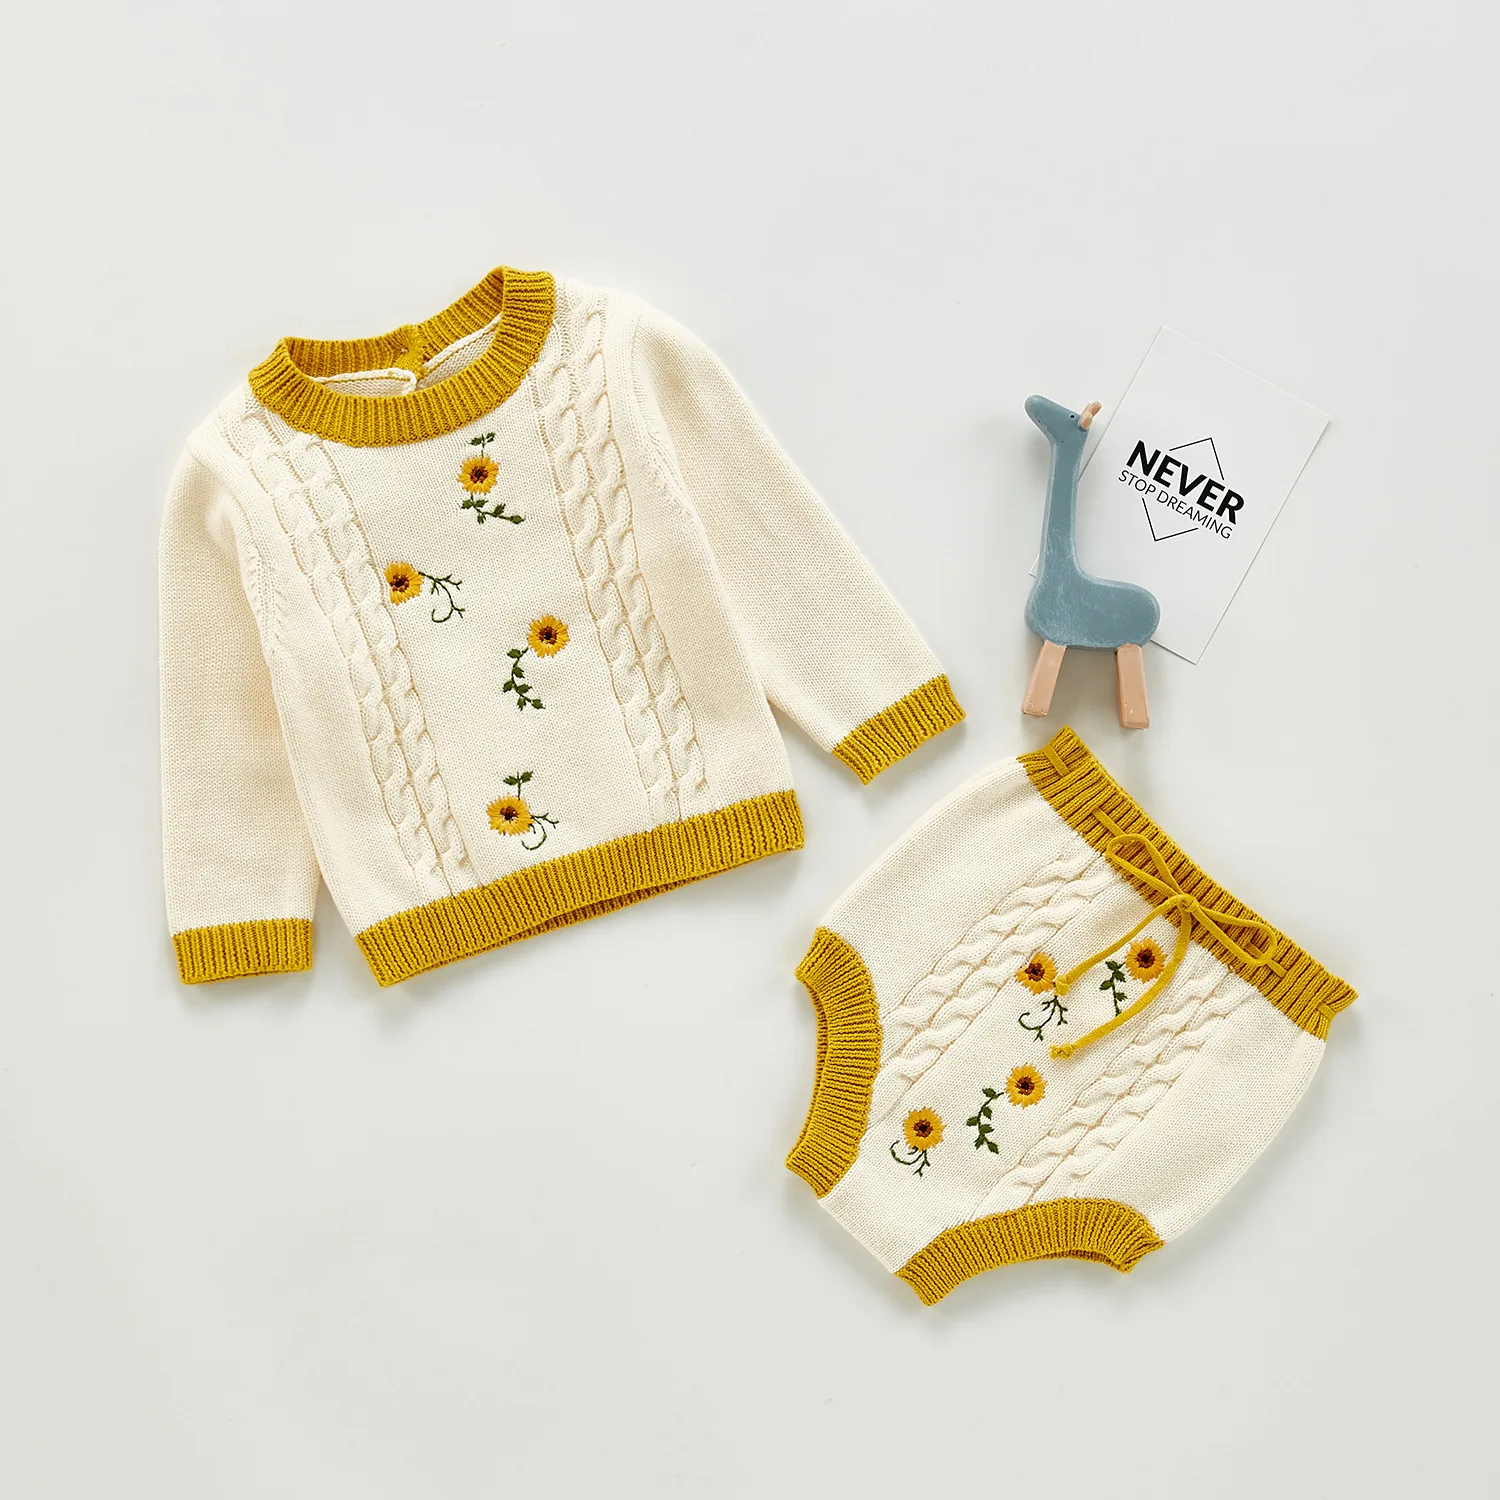 Kleding Meisjeskleding Babykleding voor meisjes Truien hand knit baby sweater and hat 